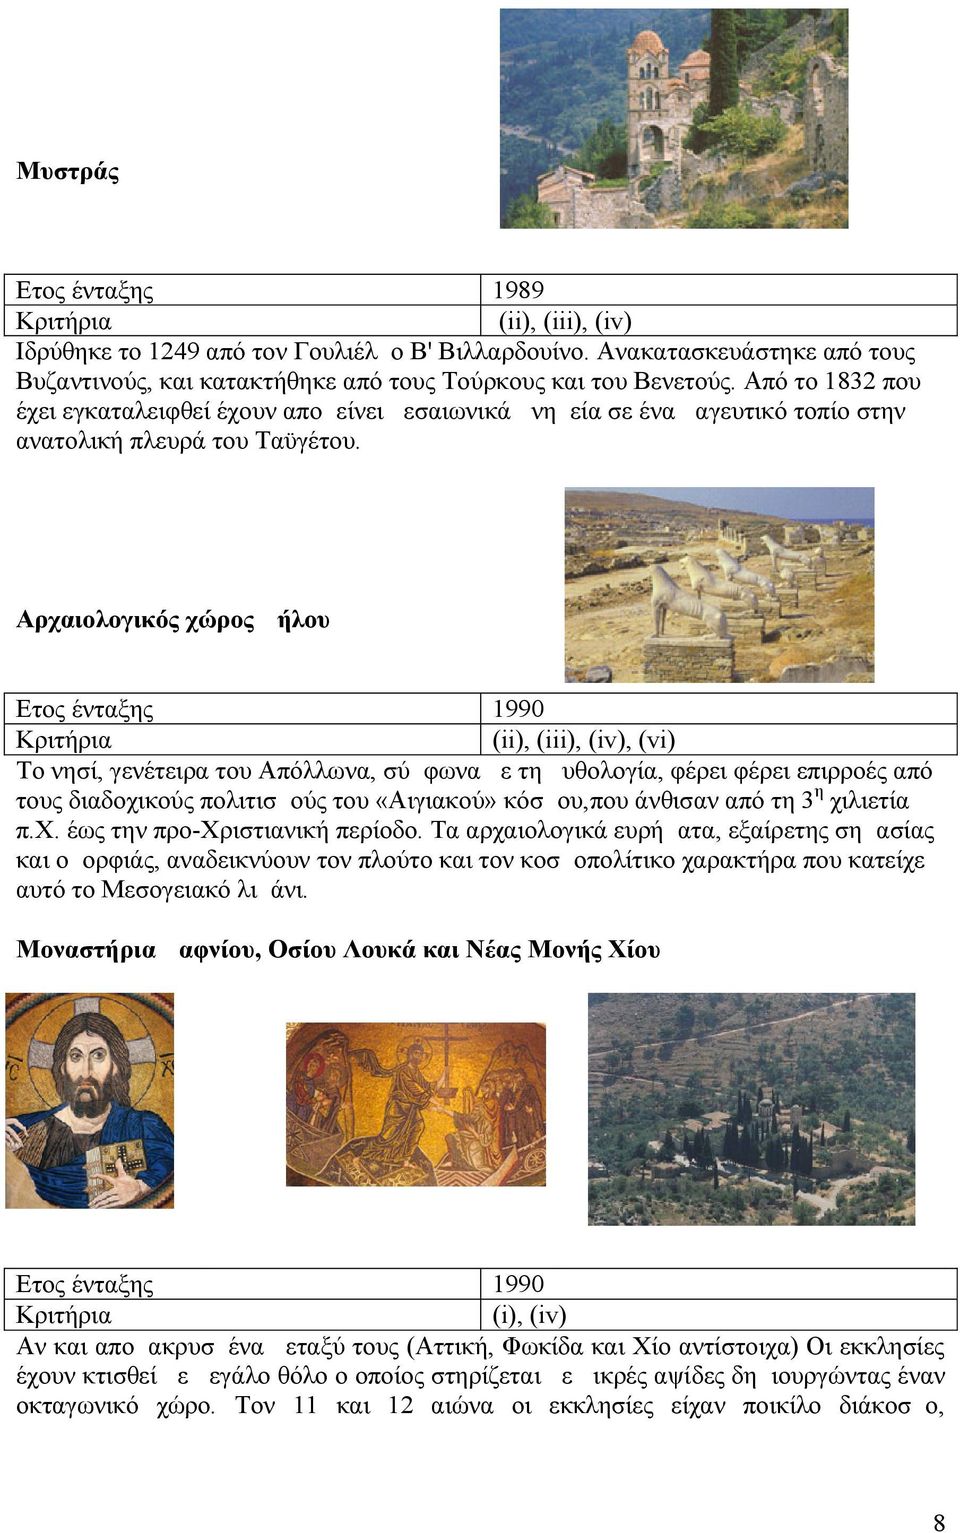 Αρχαιολογικός χώρος Δήλου 1990 (ii), (iii), (iv), (vi) Το νησί, γενέτειρα του Απόλλωνα, σύμφωνα με τη μυθολογία, φέρει φέρει επιρροές από τους διαδοχικούς πολιτισμούς του «Αιγιακού» κόσμου,που